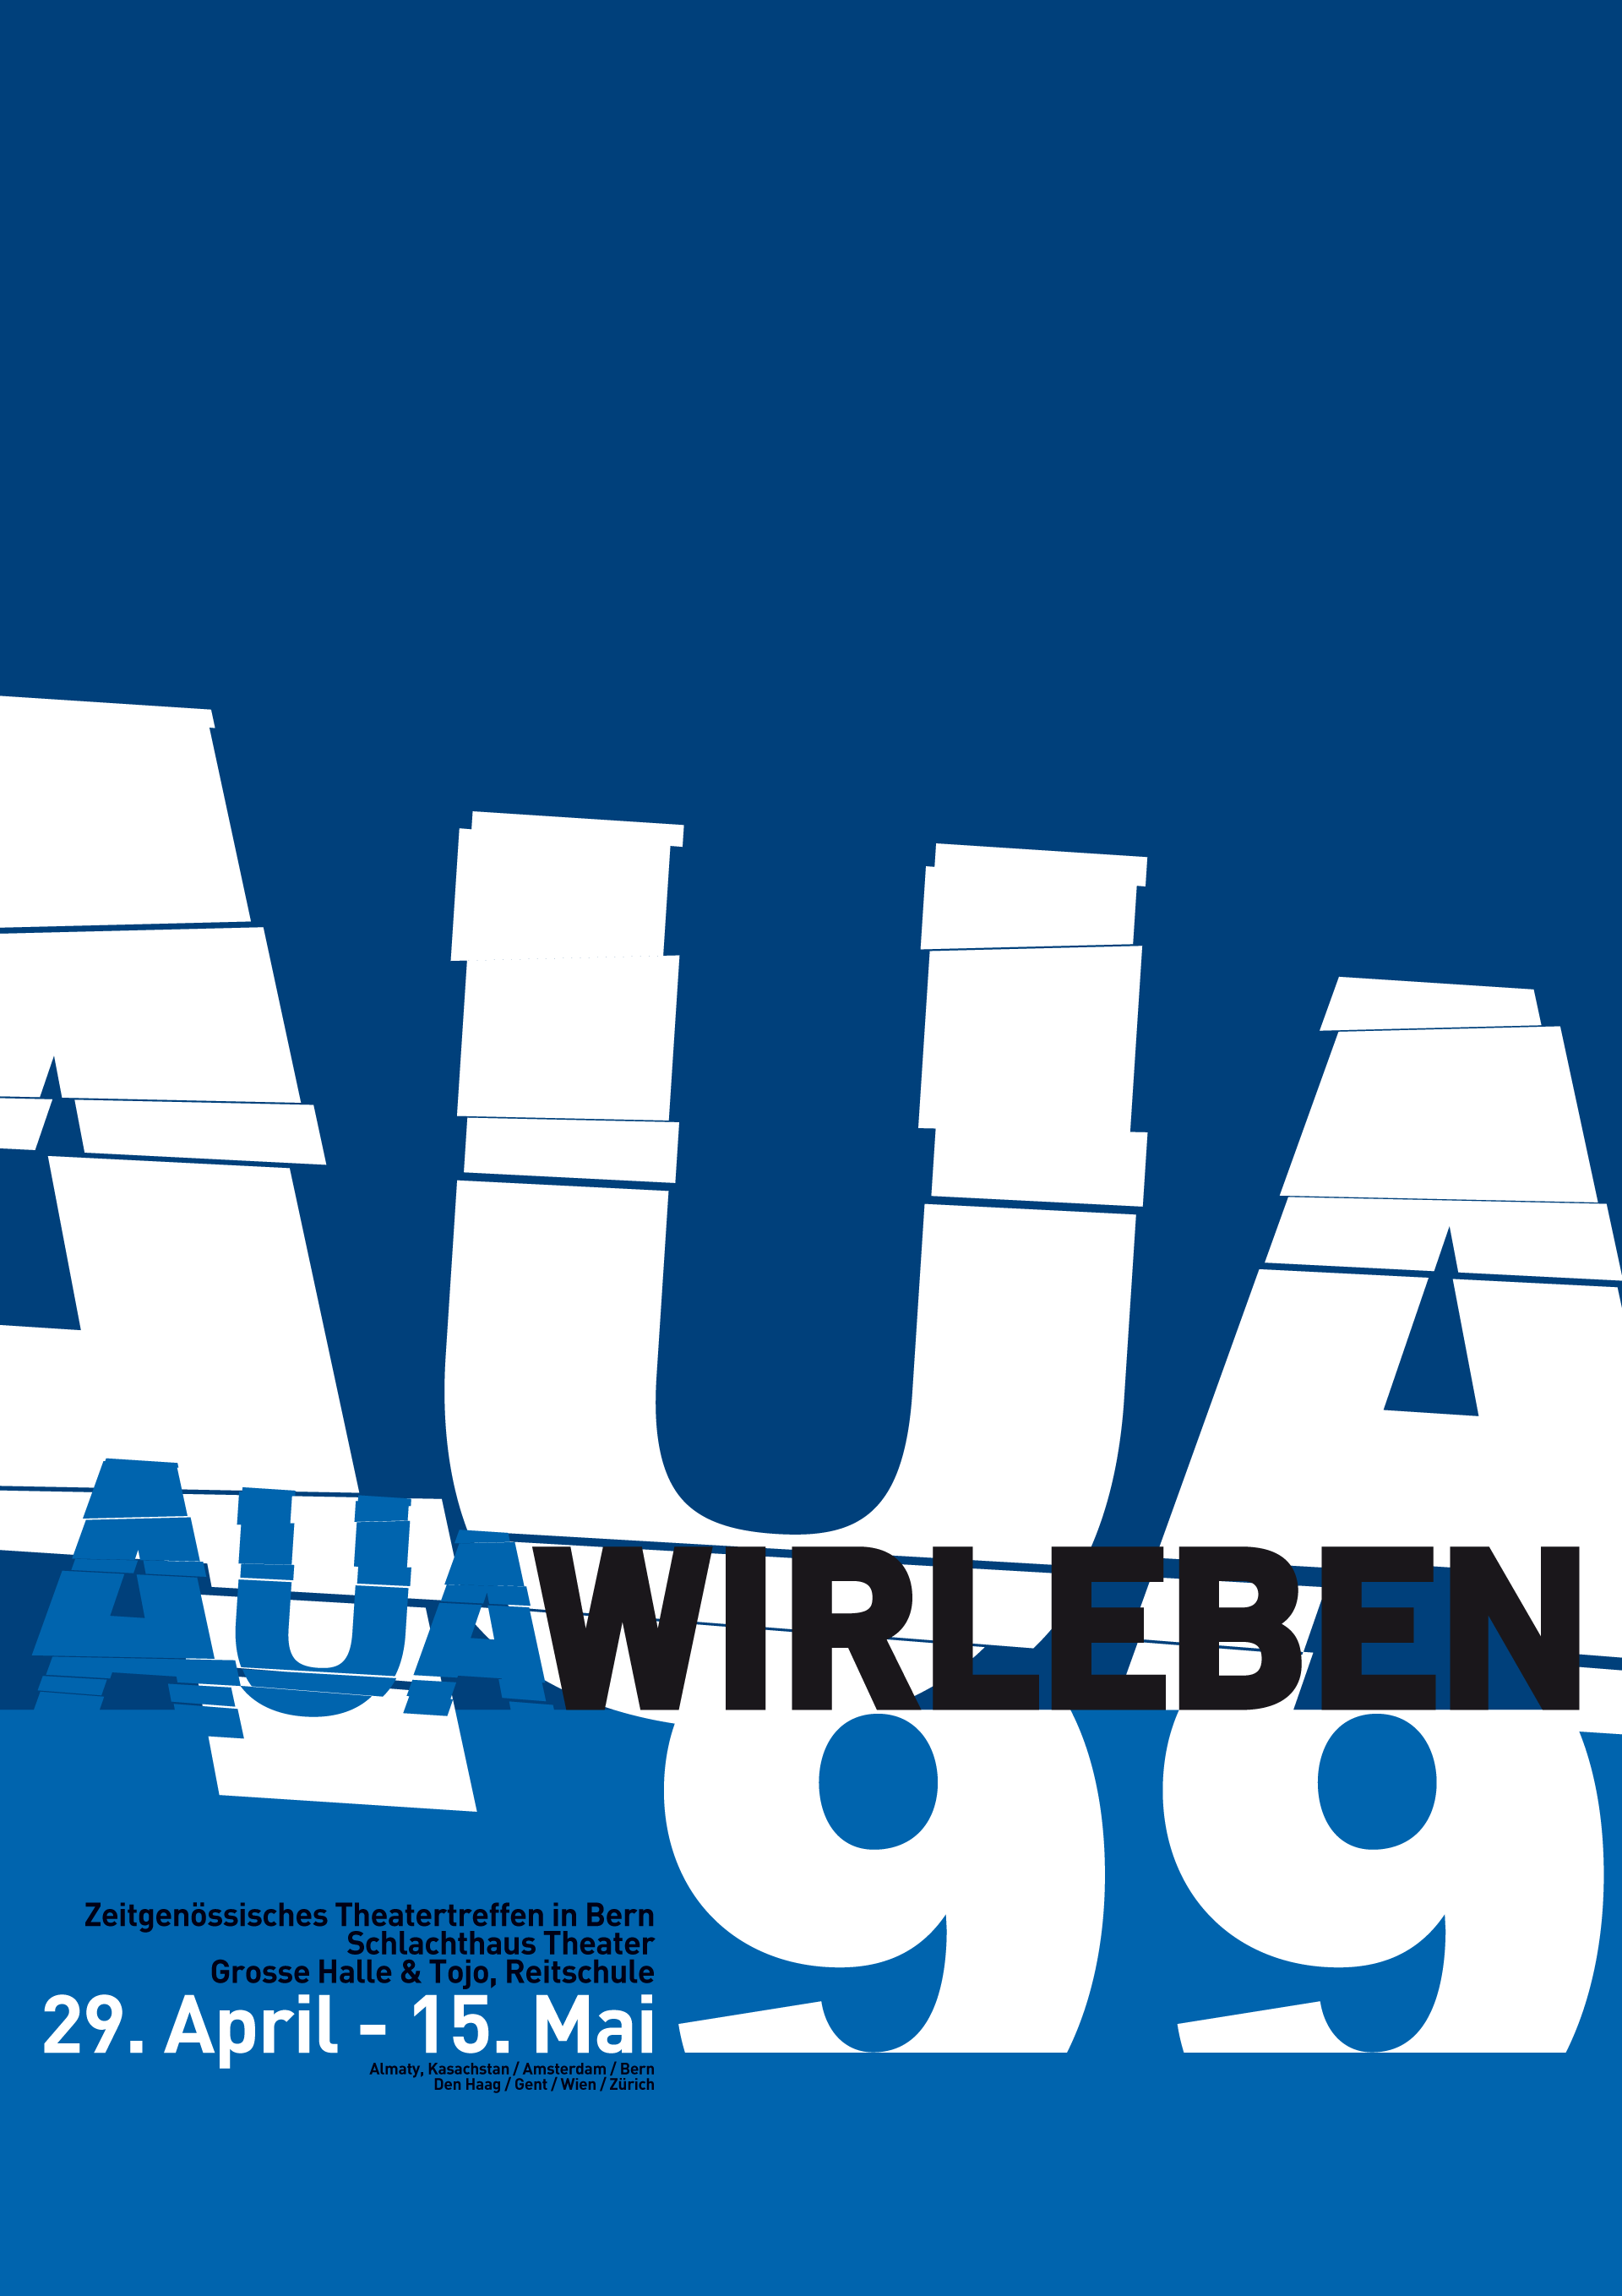 Auawirleben 1999